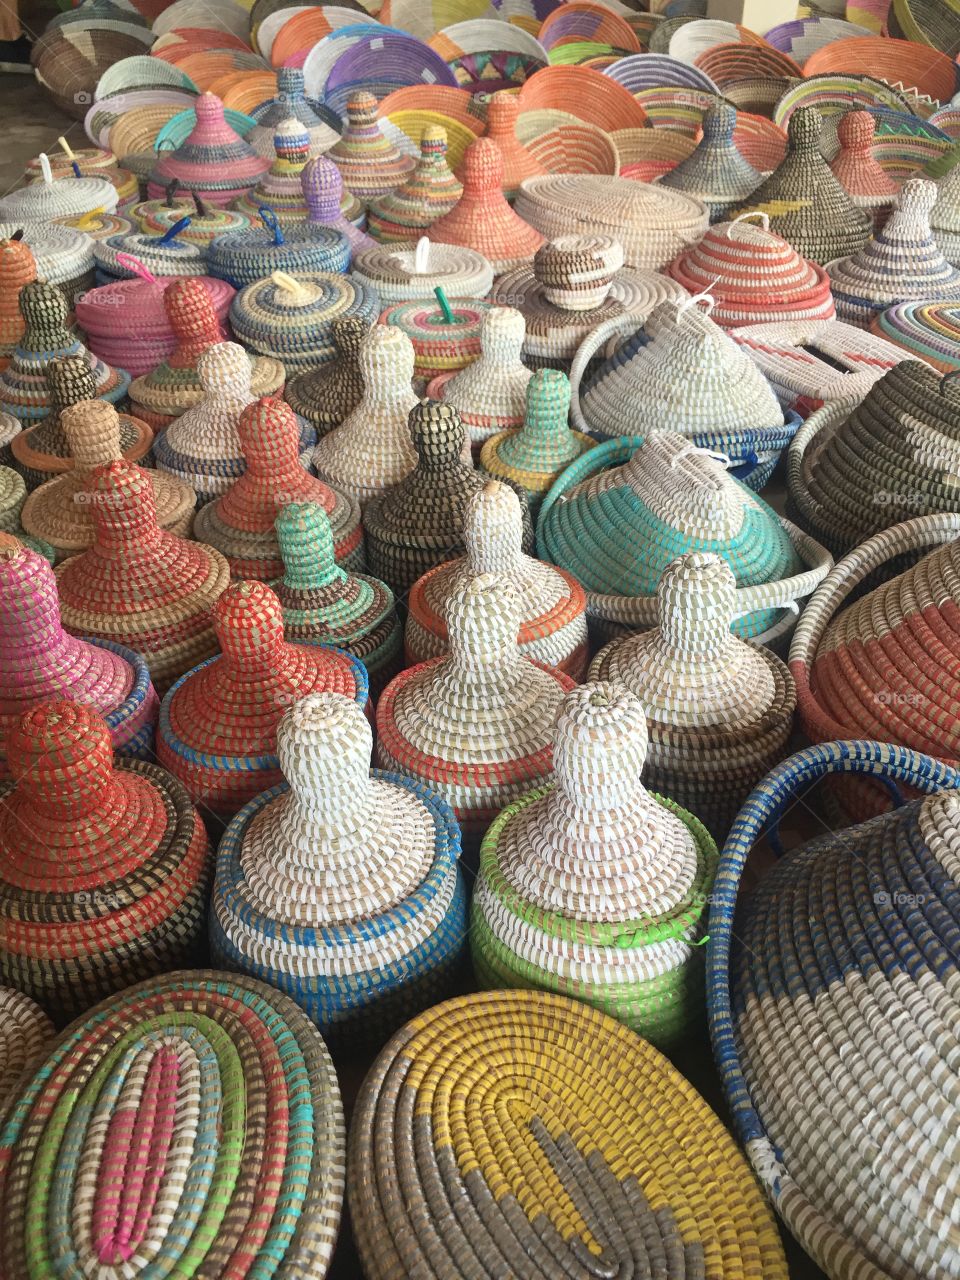 Baskets for sale in Tivaouane near Thiès, Senegal.